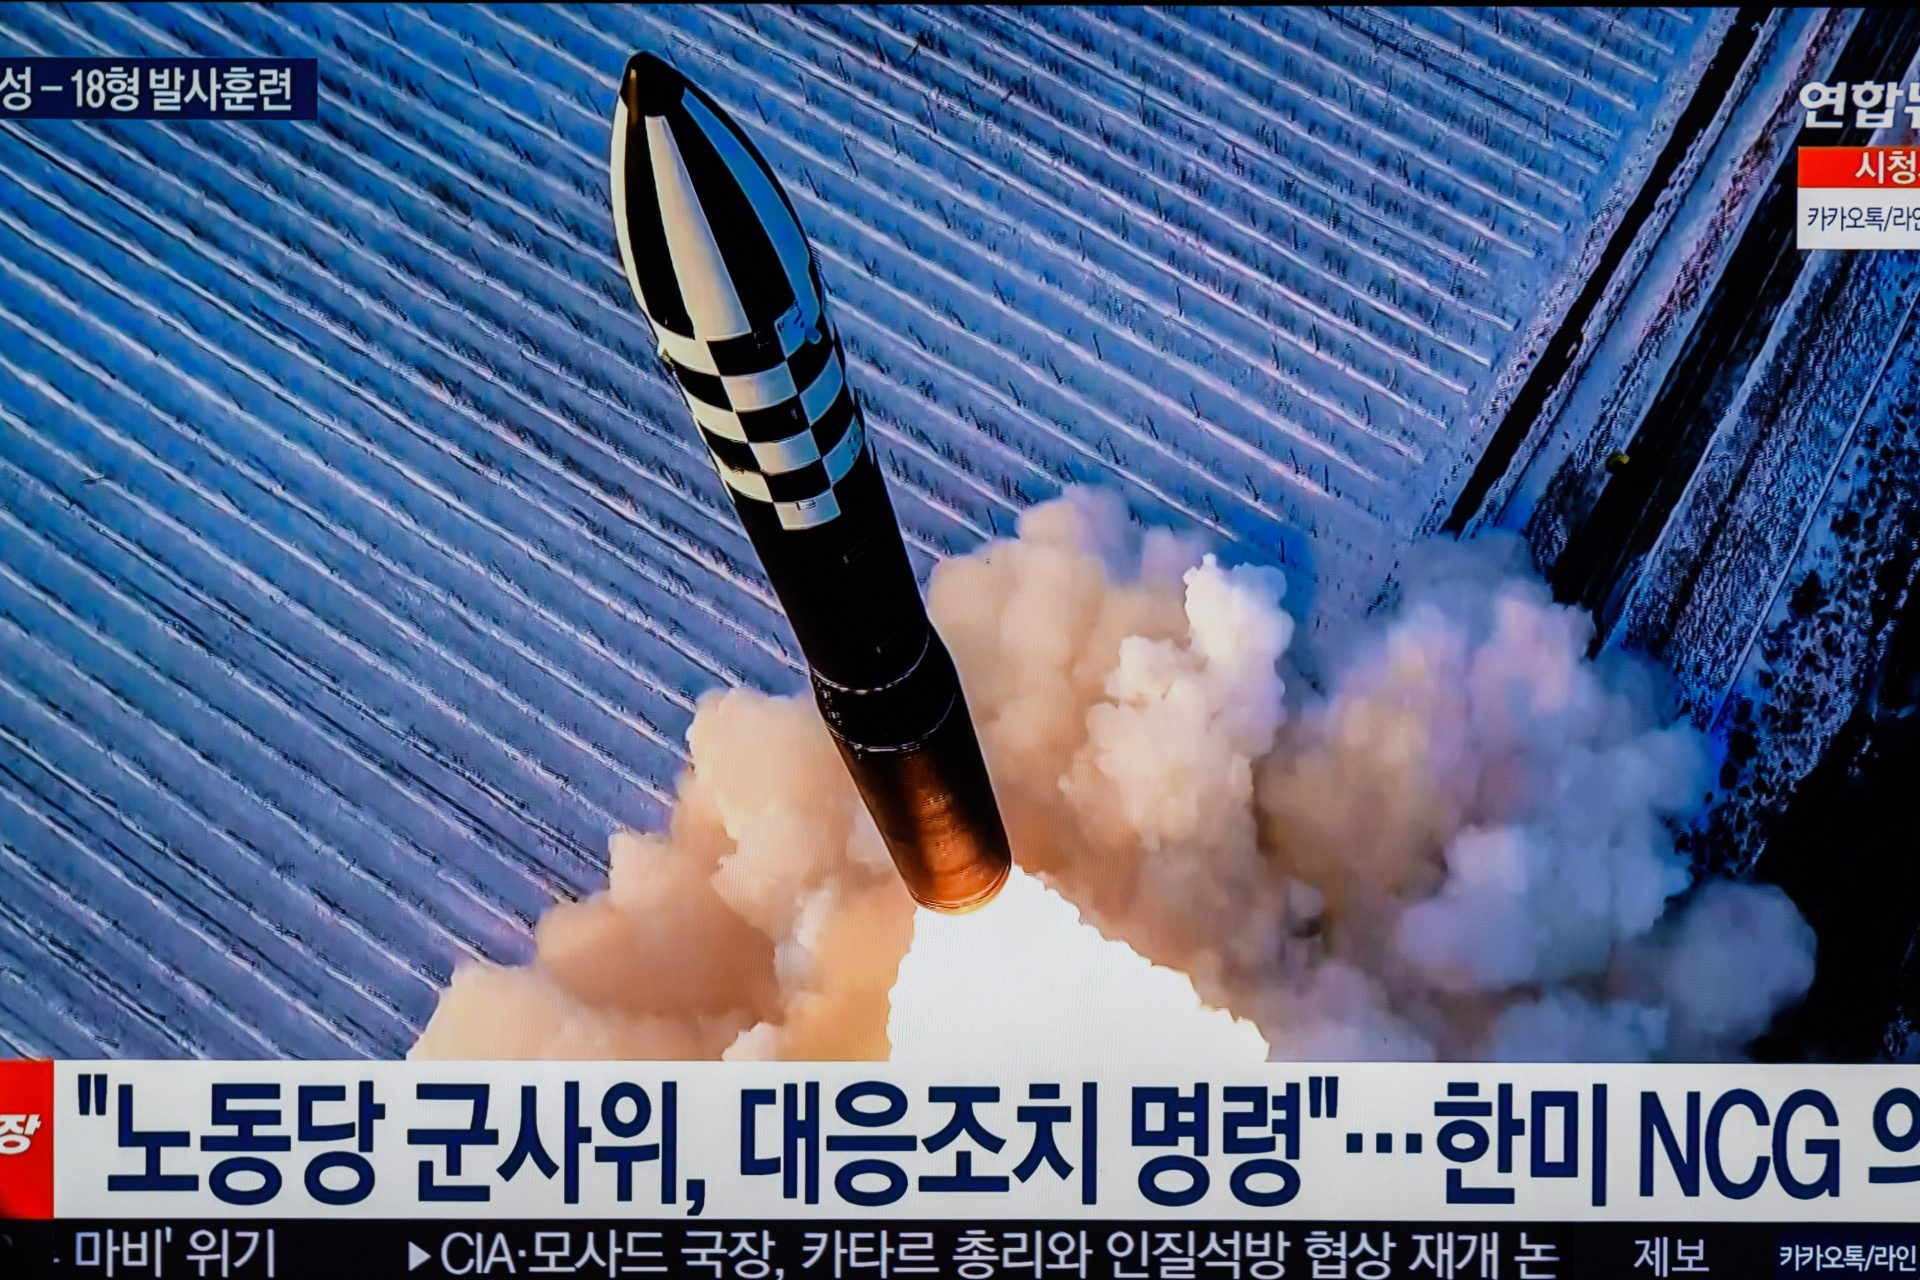 Relatório revela que os mísseis de Pyongyang contêm tecnologia ocidental